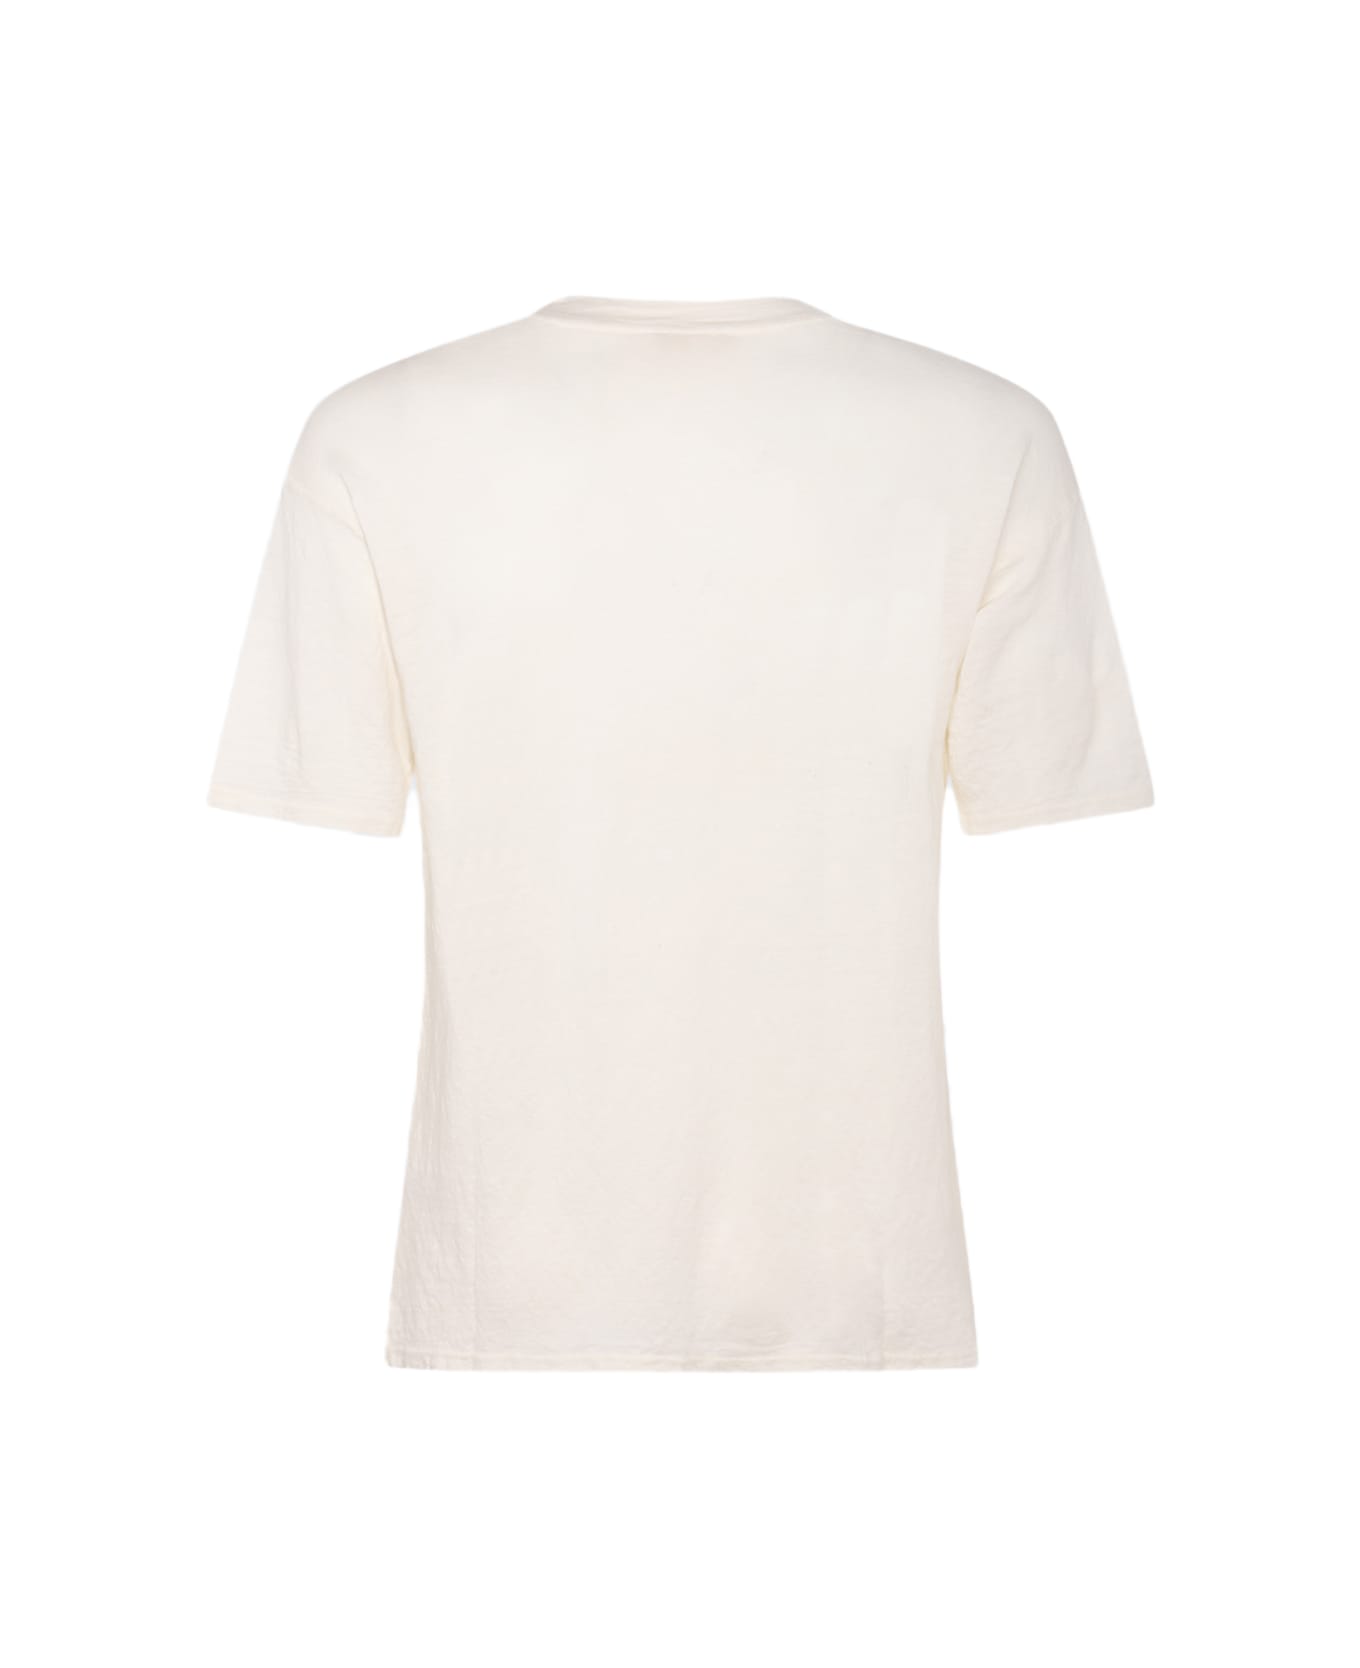 Ma'ry'ya White Linen T-shirt - White